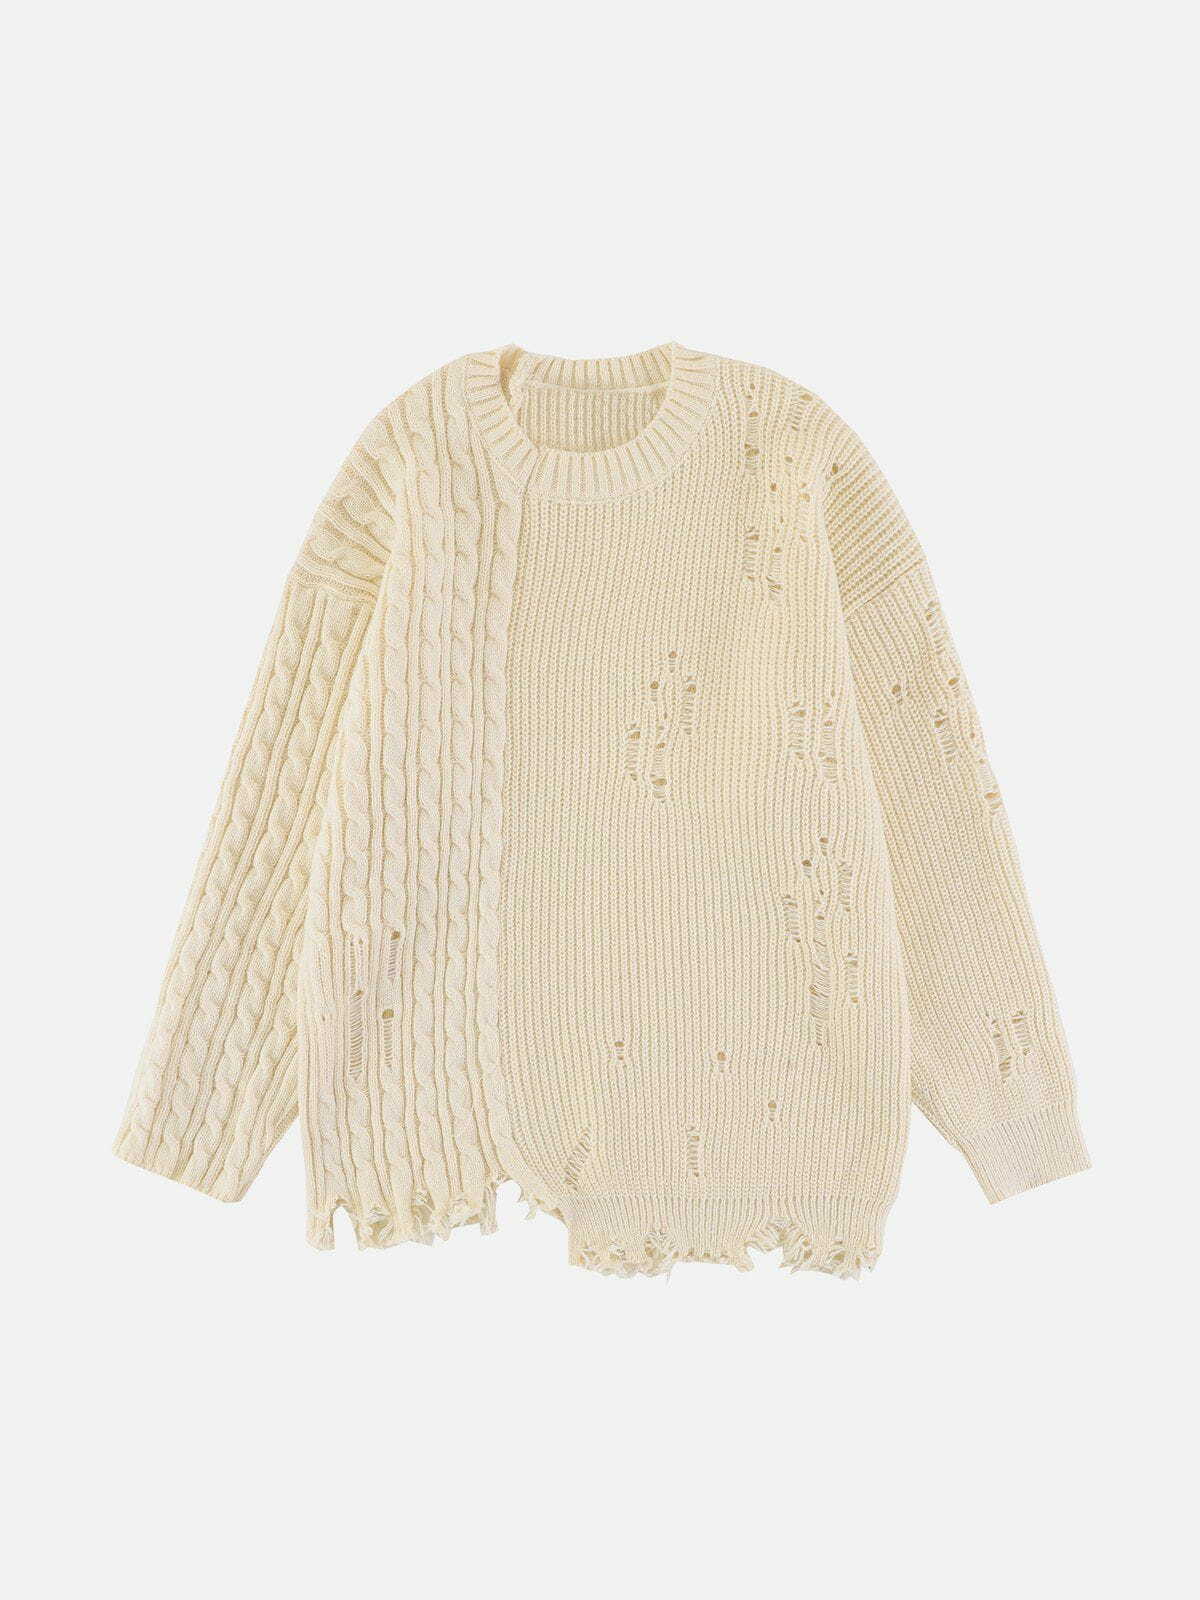 patchwork twist knit sweater edgy y2k streetwear 8287